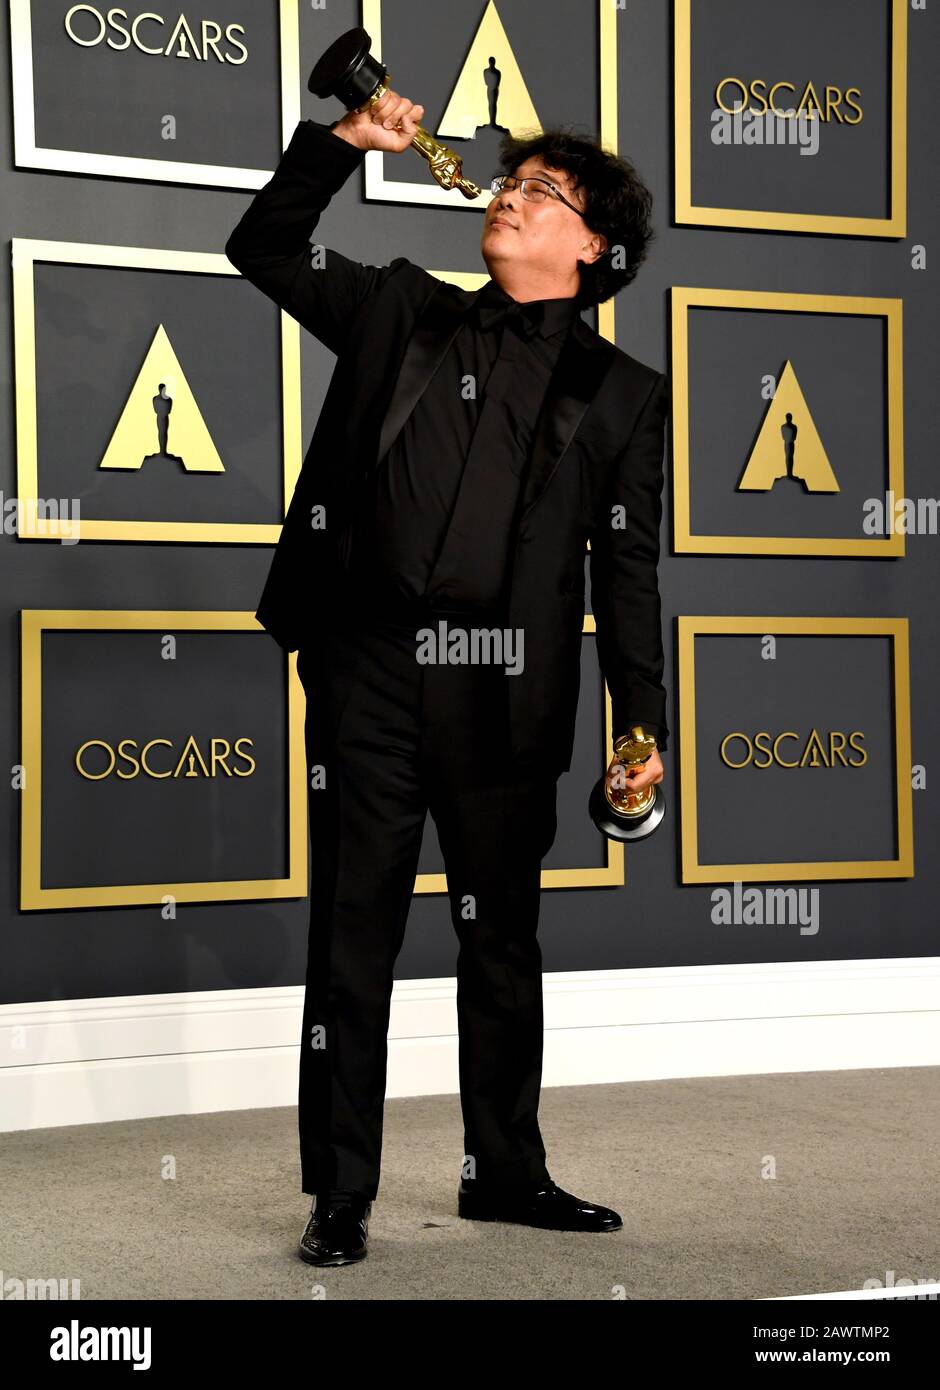 Bong Joon-ho avec ses Oscars pour le meilleur directeur et la meilleure Image pour Le Parasite dans la salle de presse lors des 92ème Academy Awards qui ont eu lieu au Dolby Theatre à Hollywood, Los Angeles, États-Unis. Banque D'Images